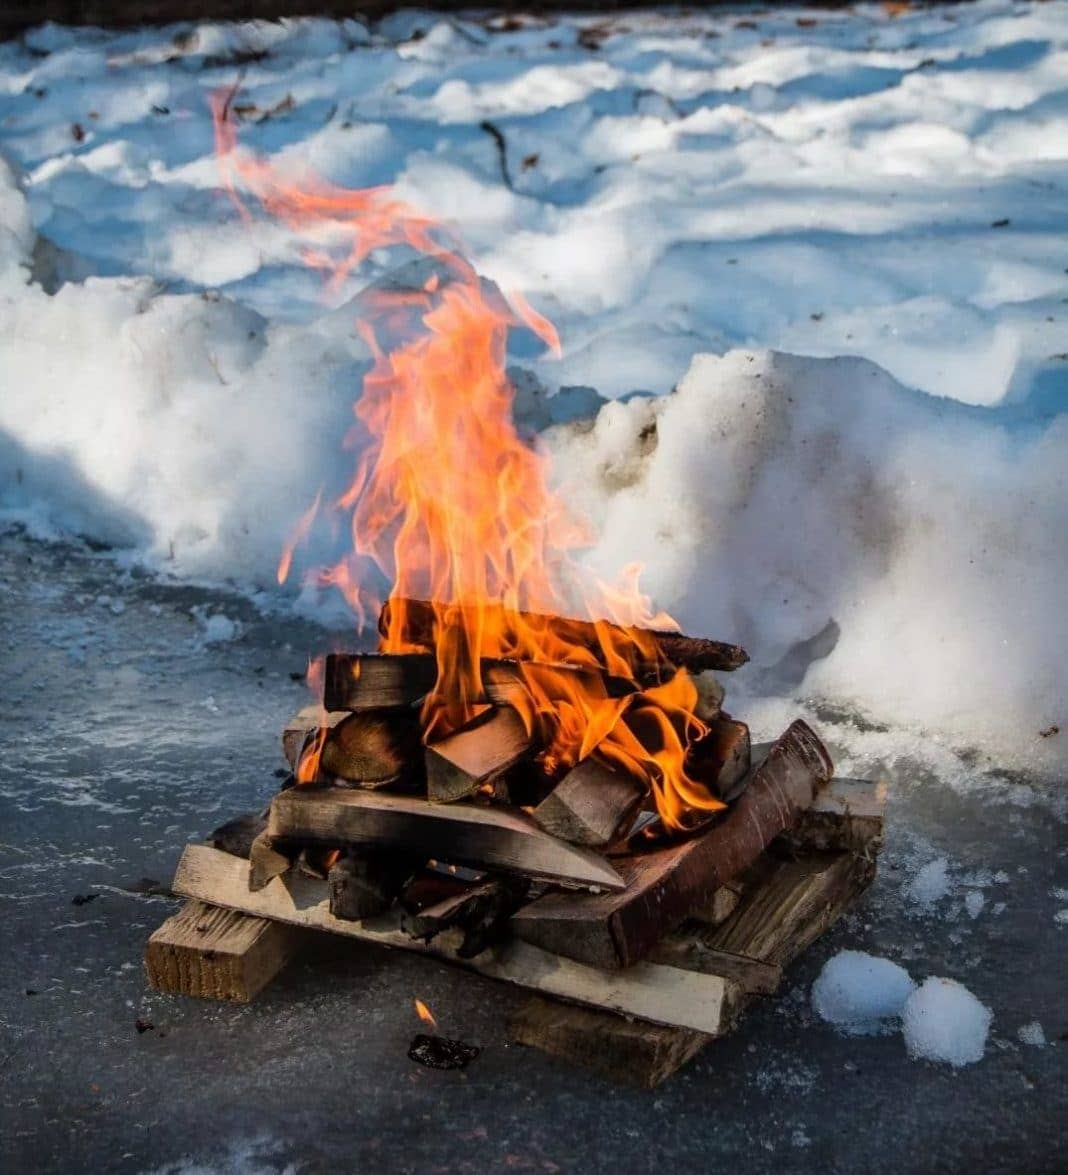 Як розпалити багаття взимку без сірників   як розпалити вогонь у лісі